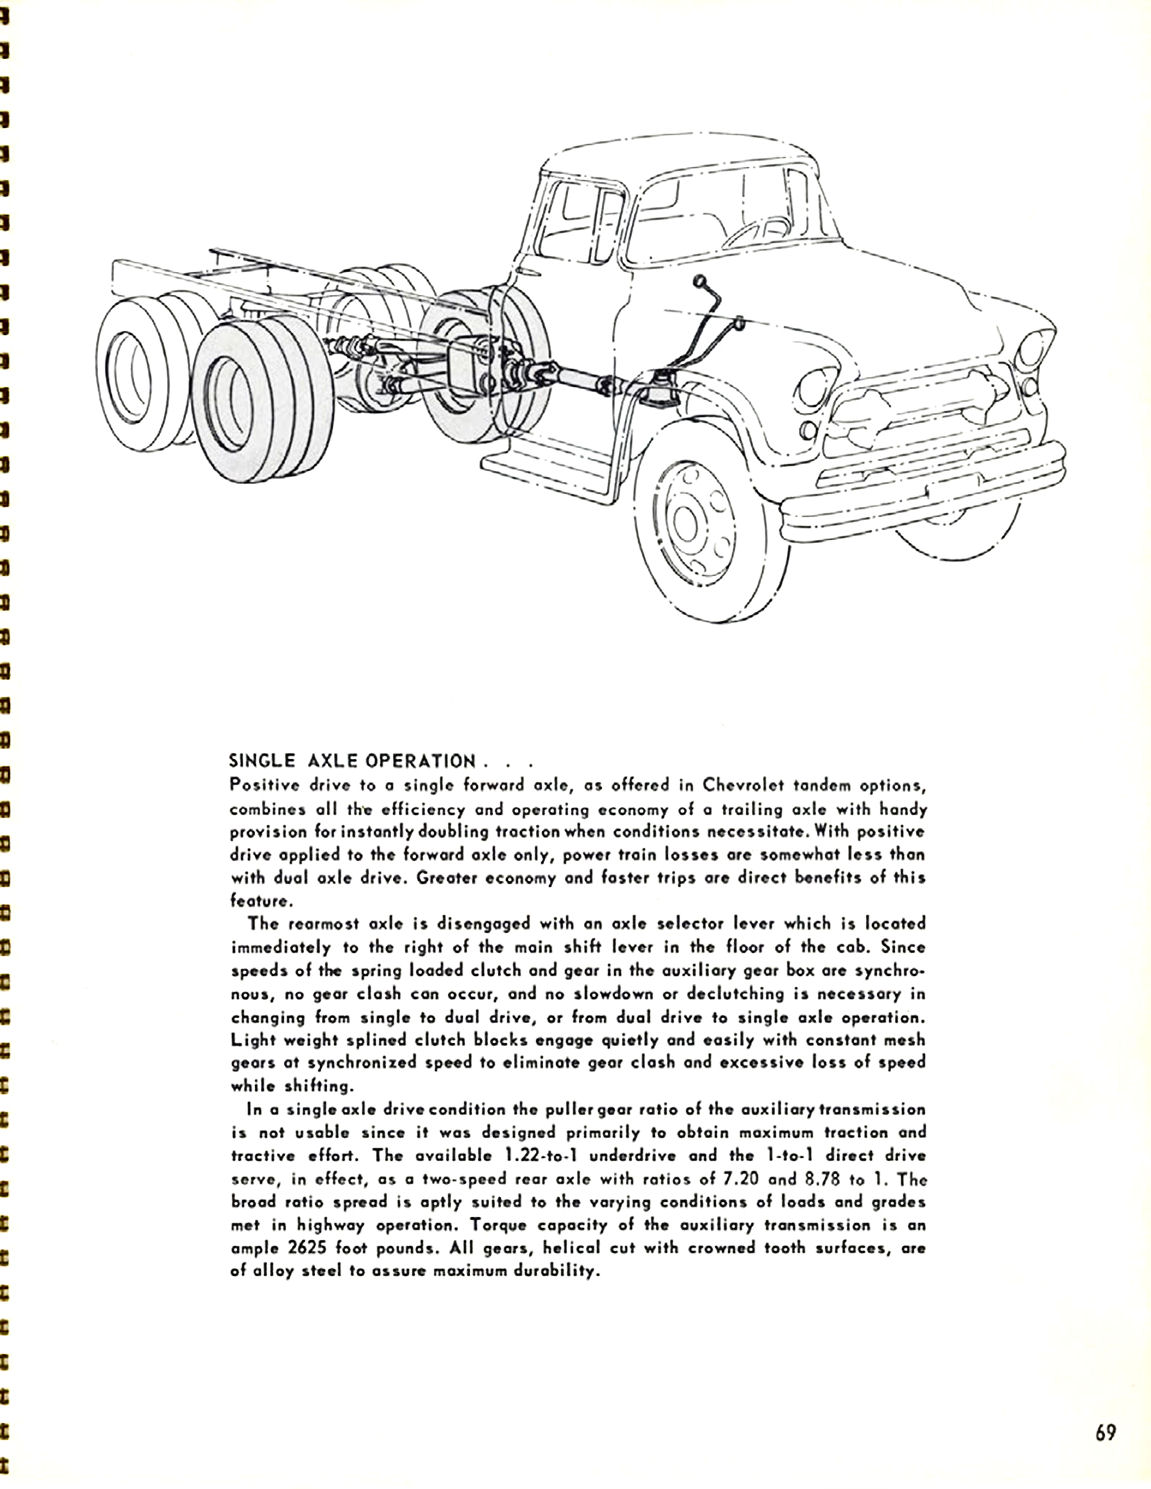 1956_Chevrolet_Truck_Engineering_Features-69